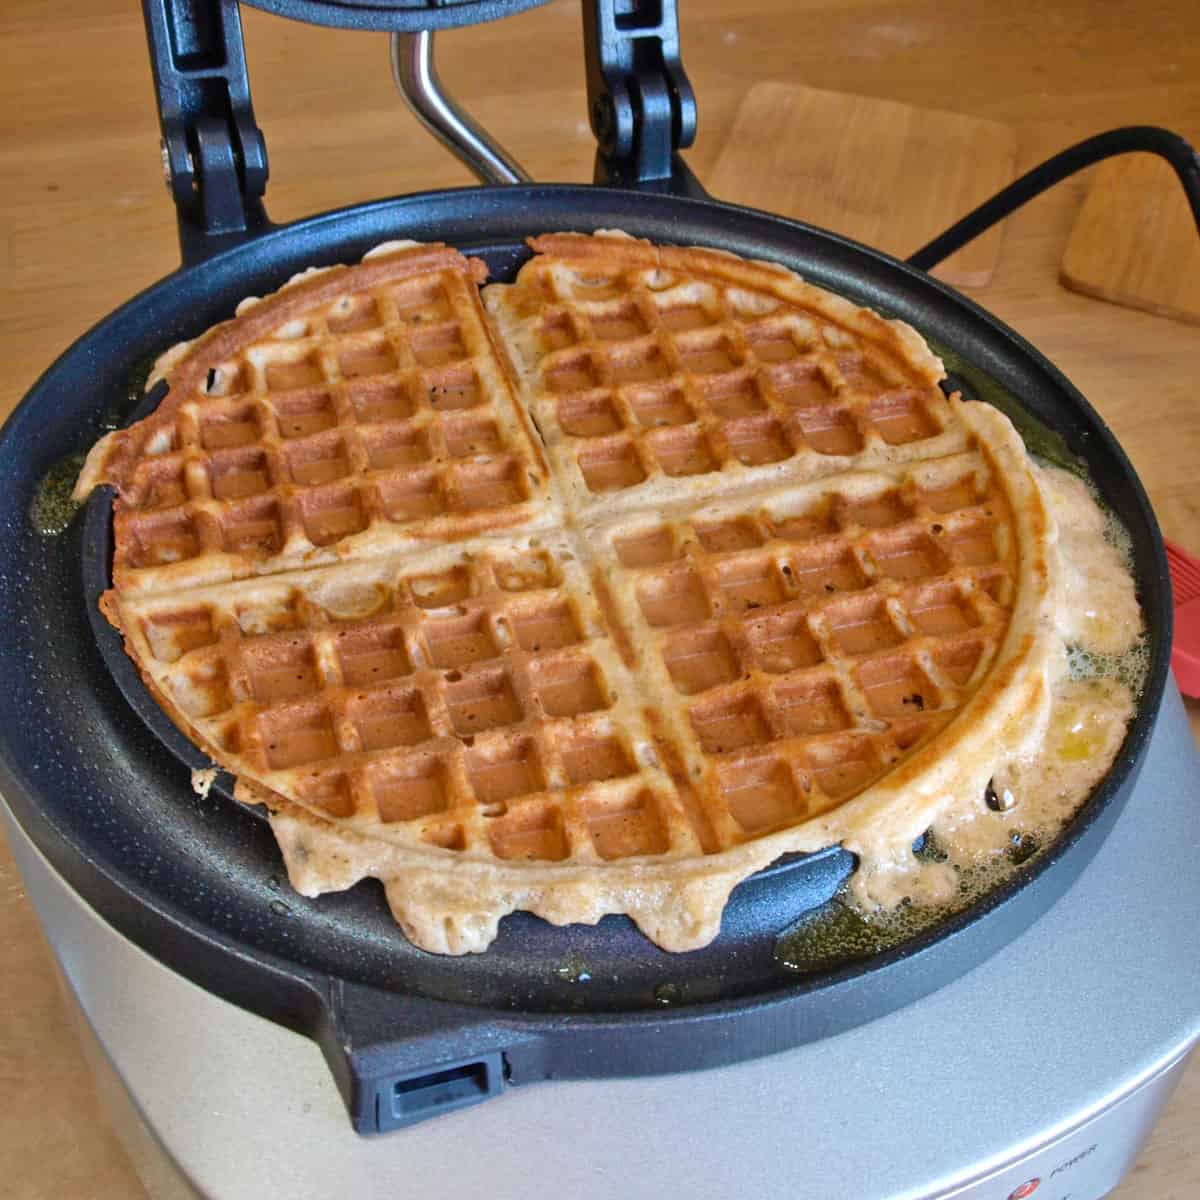 Waffles on waffle iron